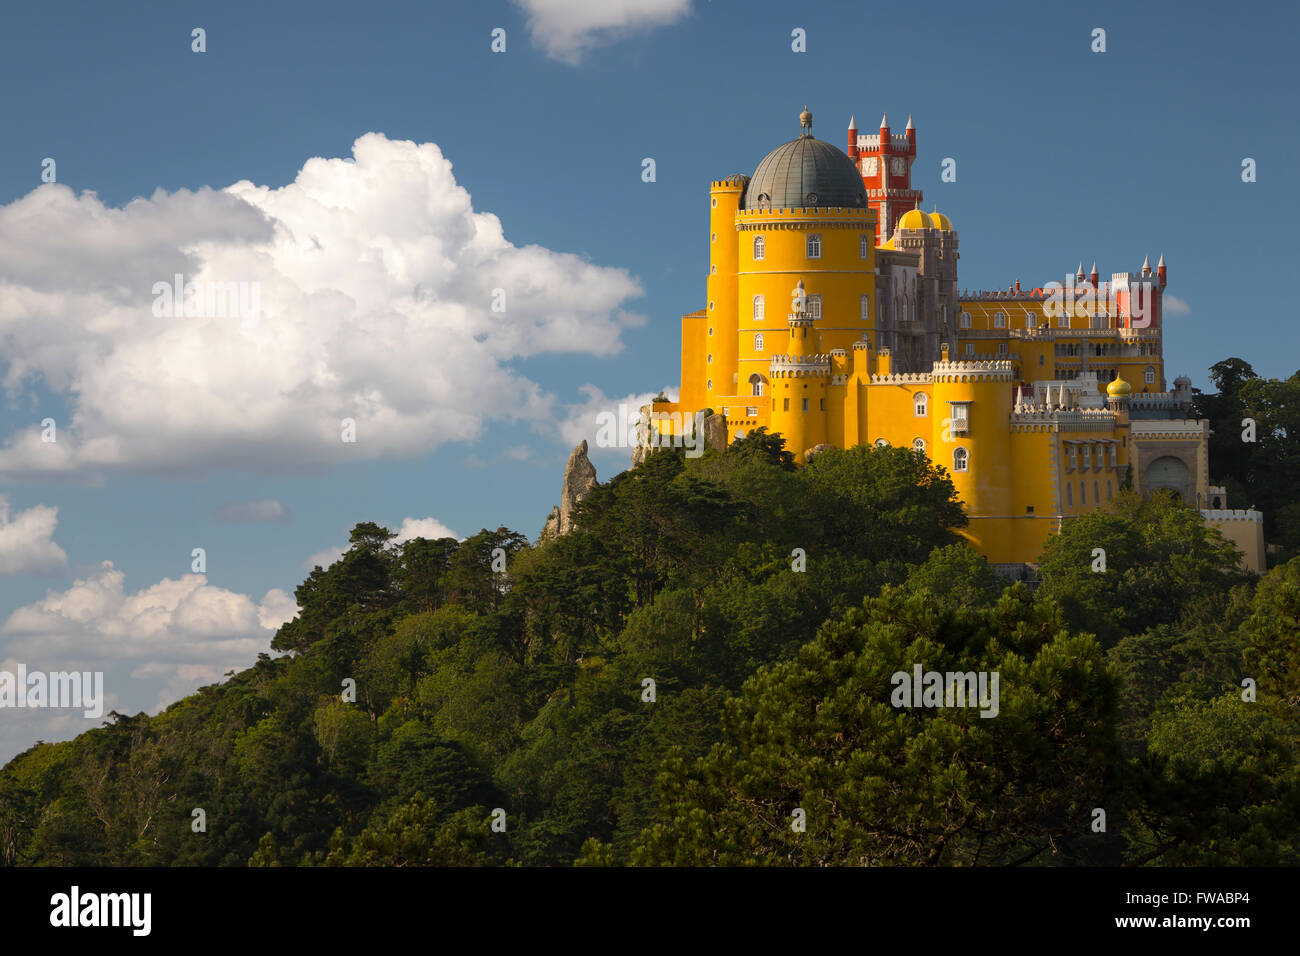 Le Portugal. Sintra. Le palais de Pena sur une falaise entourée par la forêt et les nuages Banque D'Images